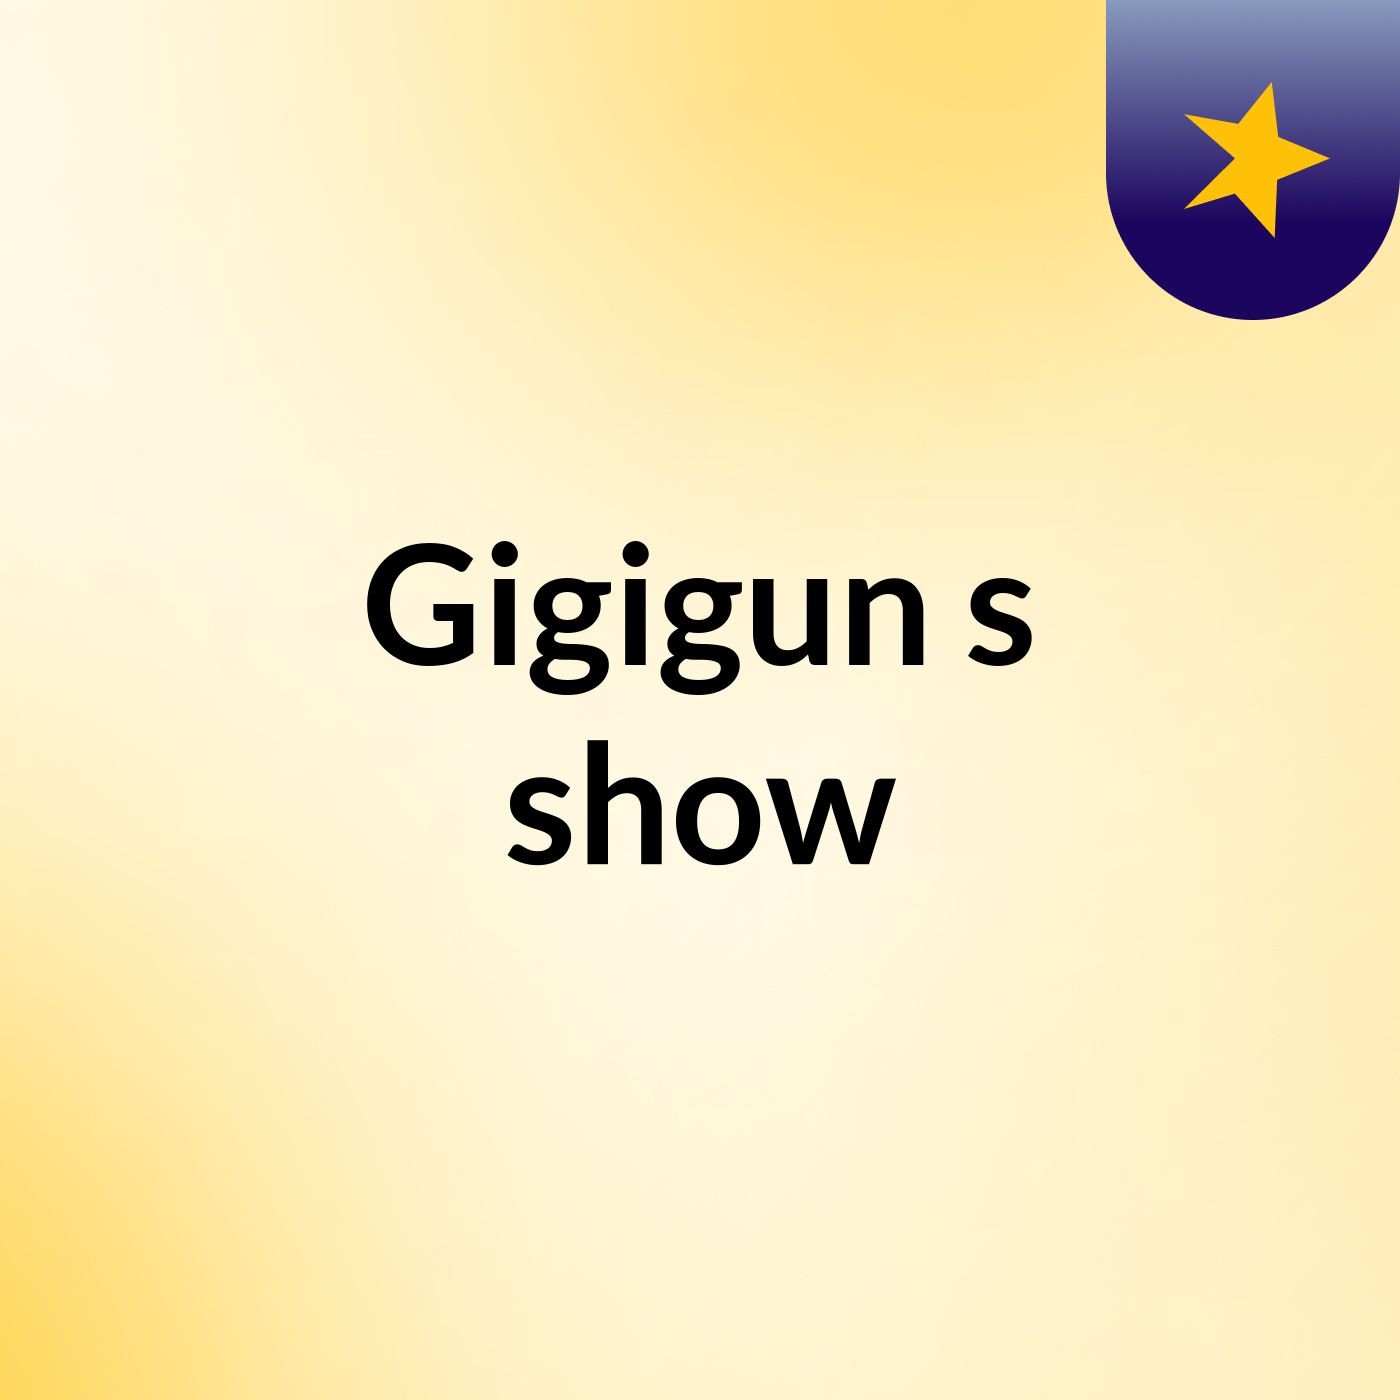 Gigigun's show